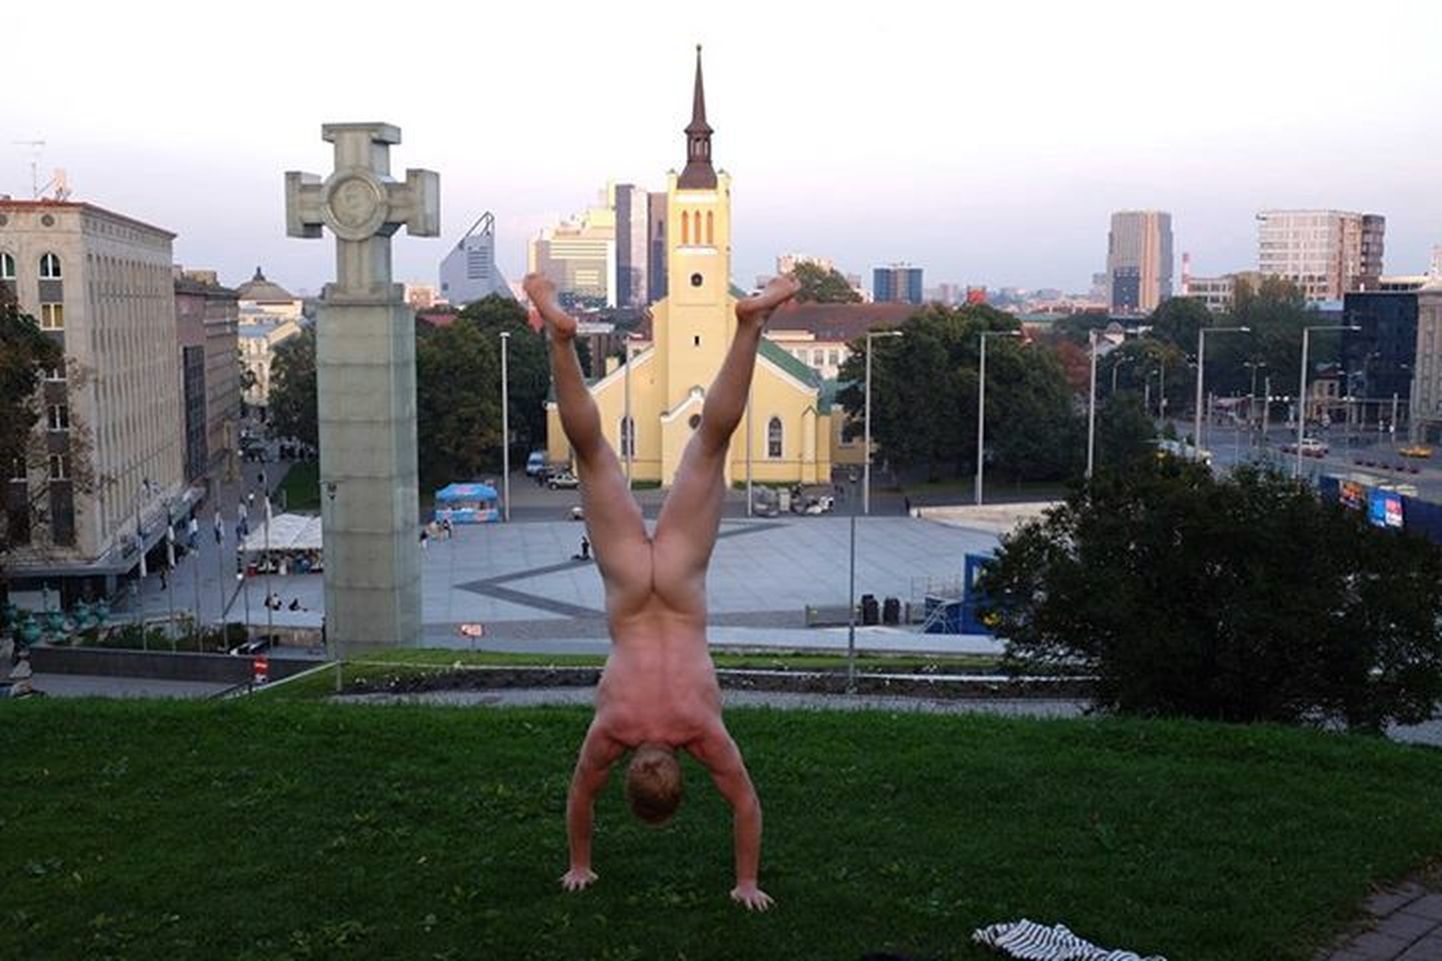 The Naked Handstander ehk alasti kätelseisja Tallinna Vabaduse platsi juures